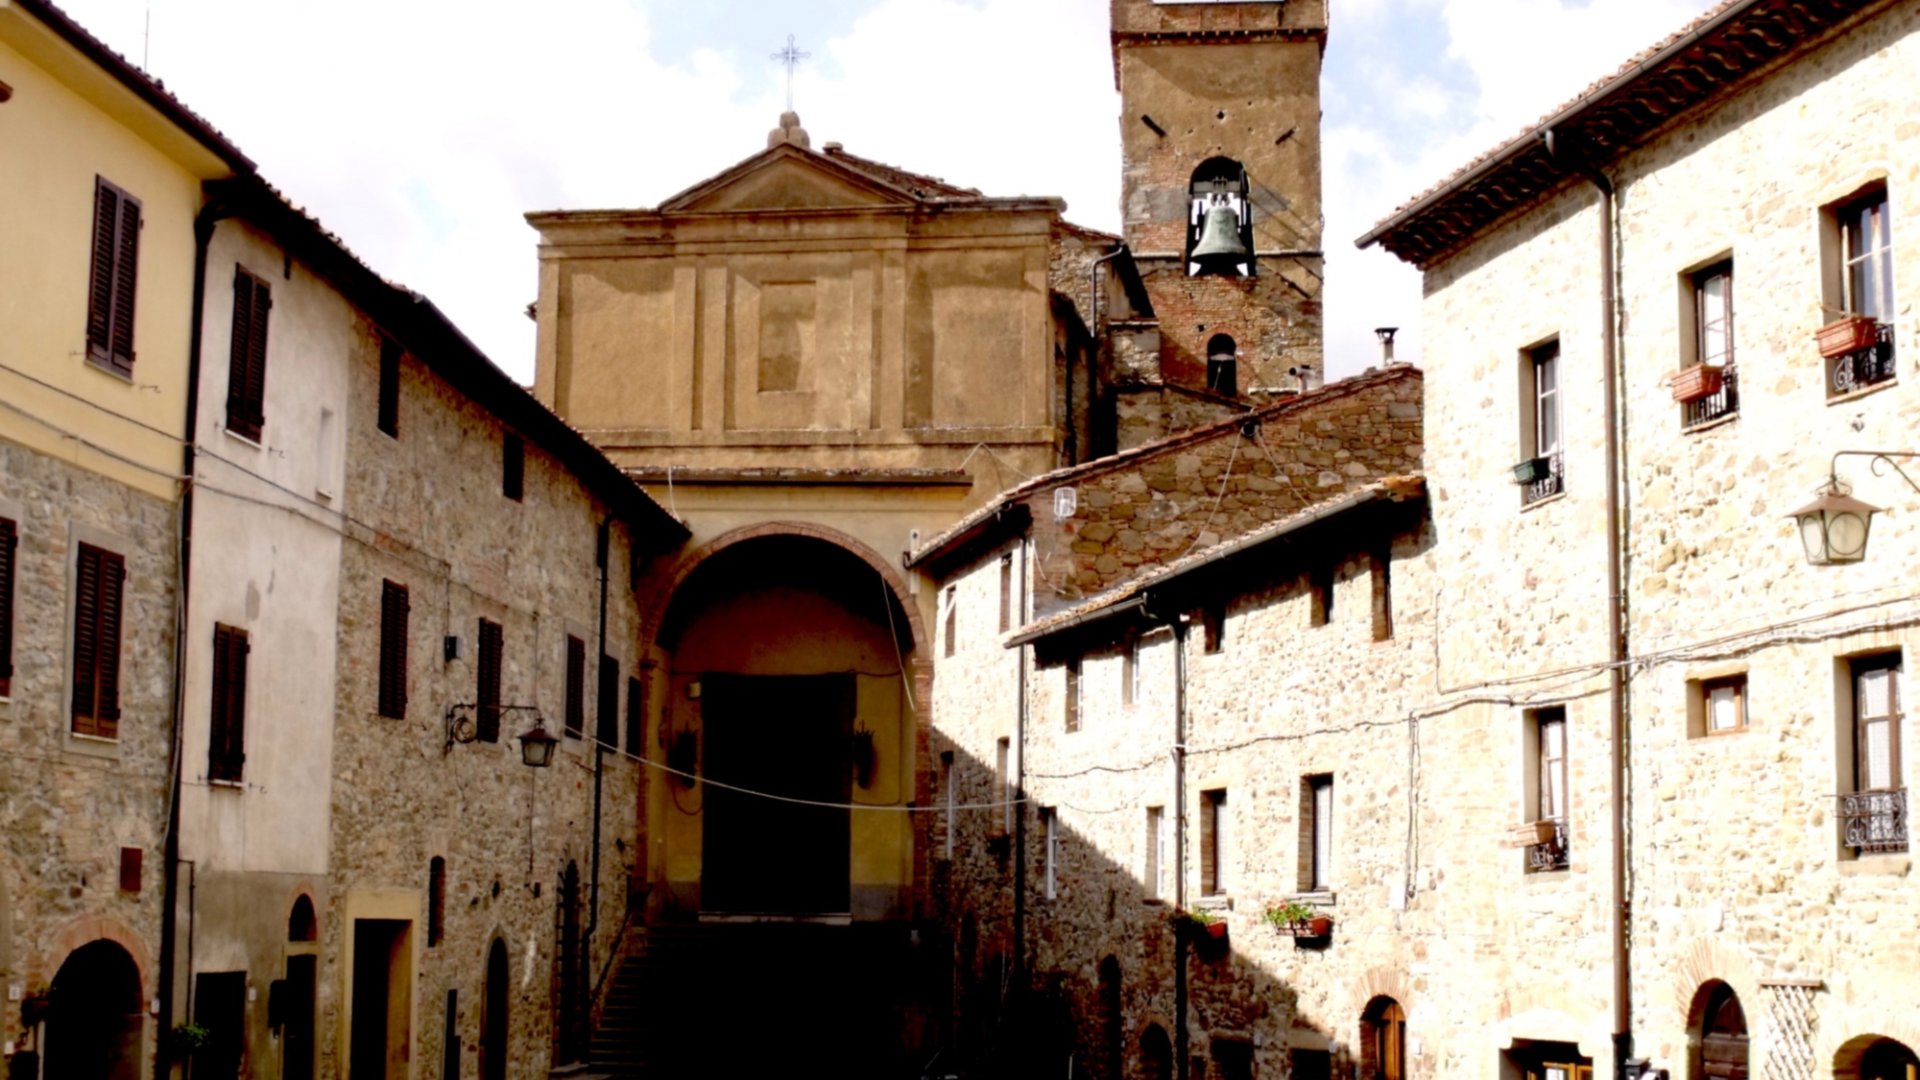 Church of San Donato - Chianni